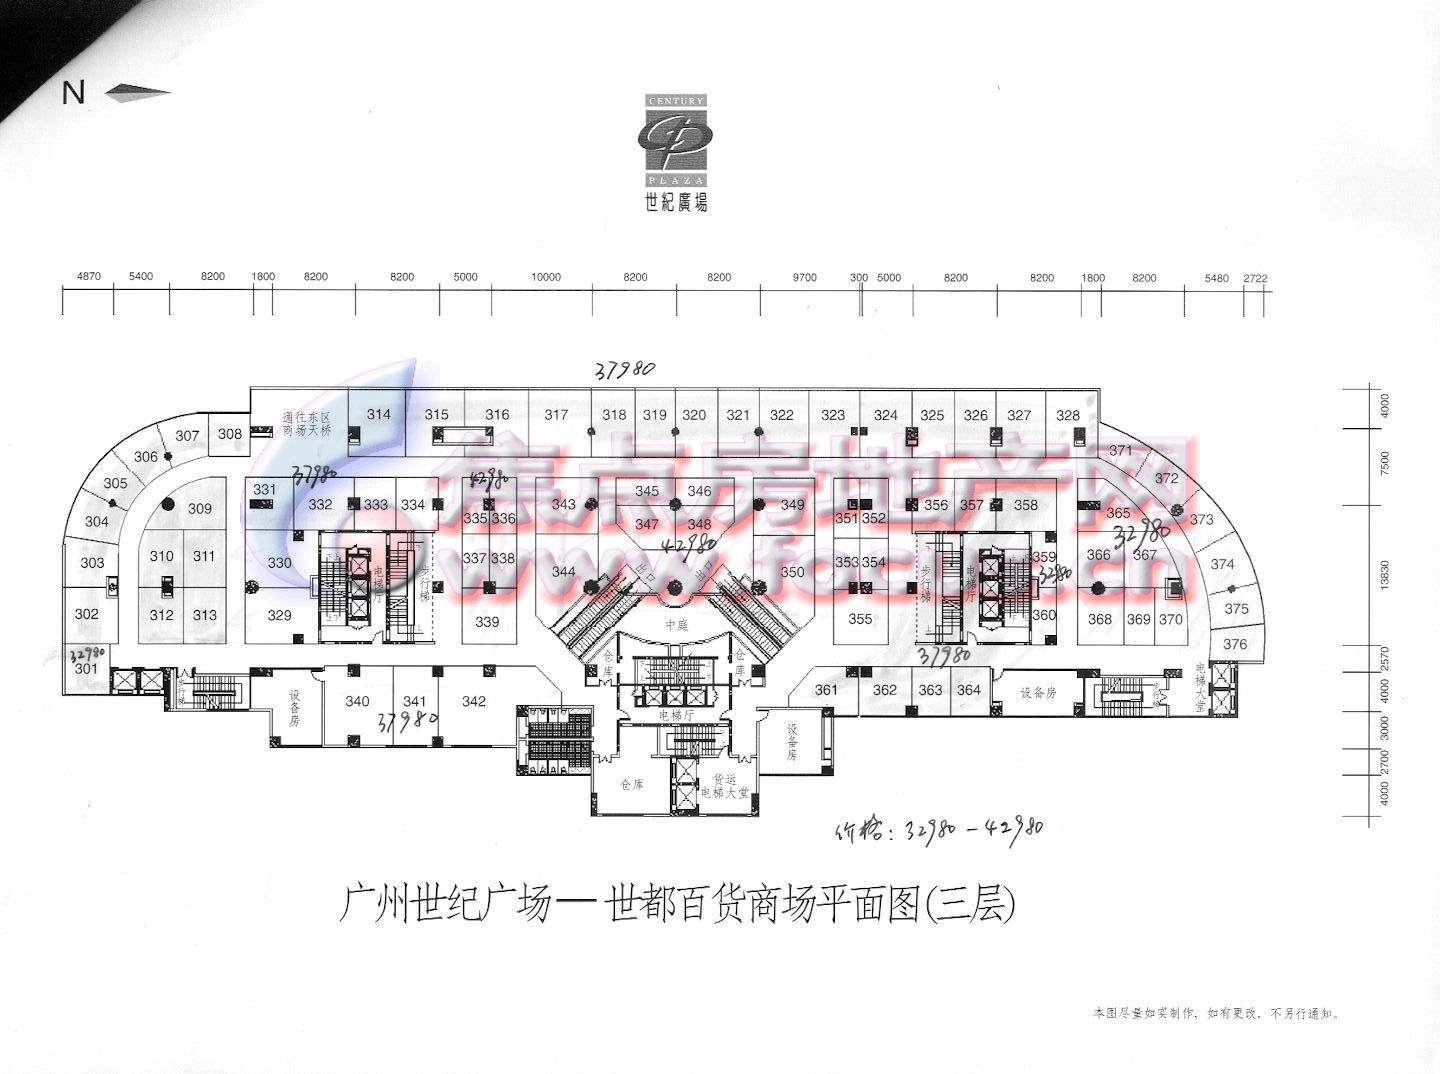 世纪广场世都百货商场三层平面图(2)